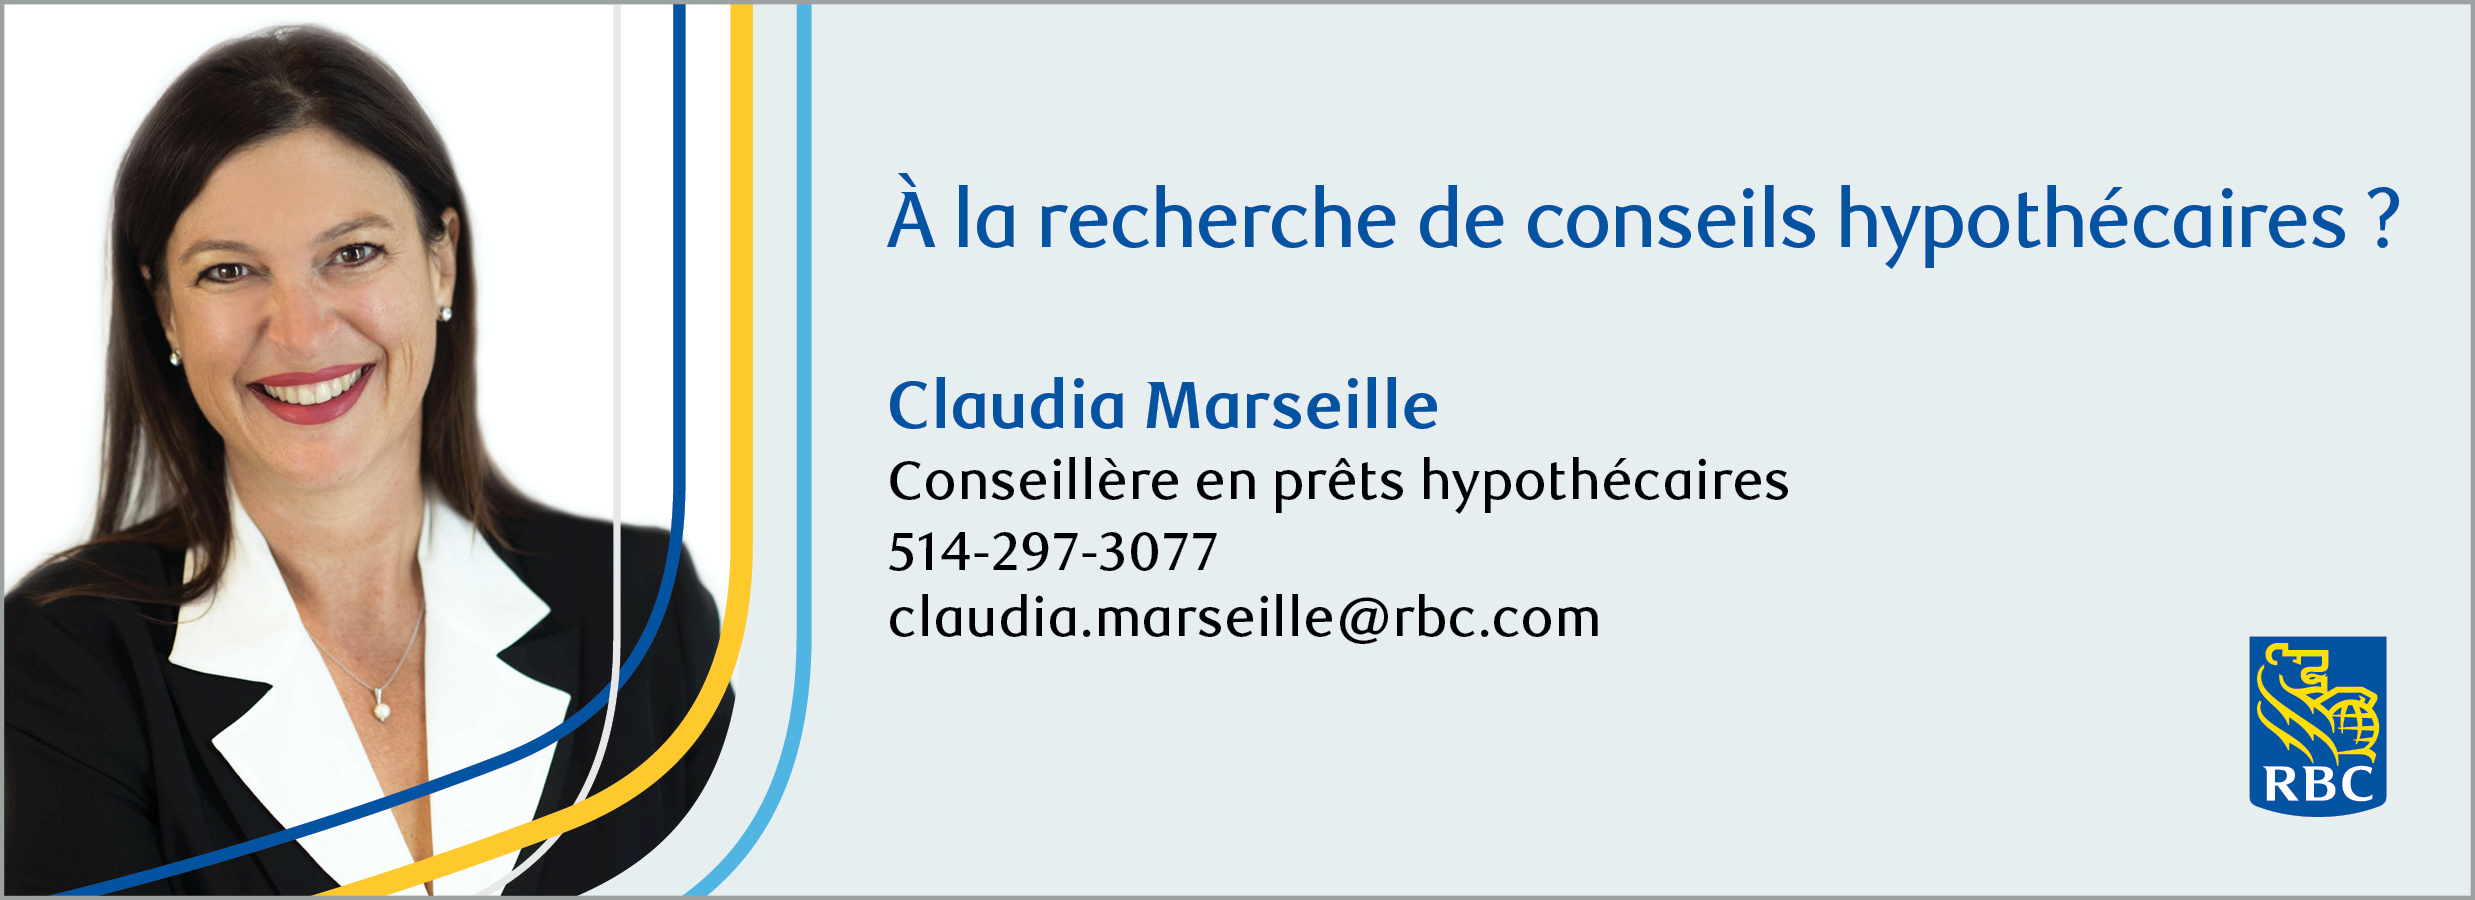 Claudia Marseille